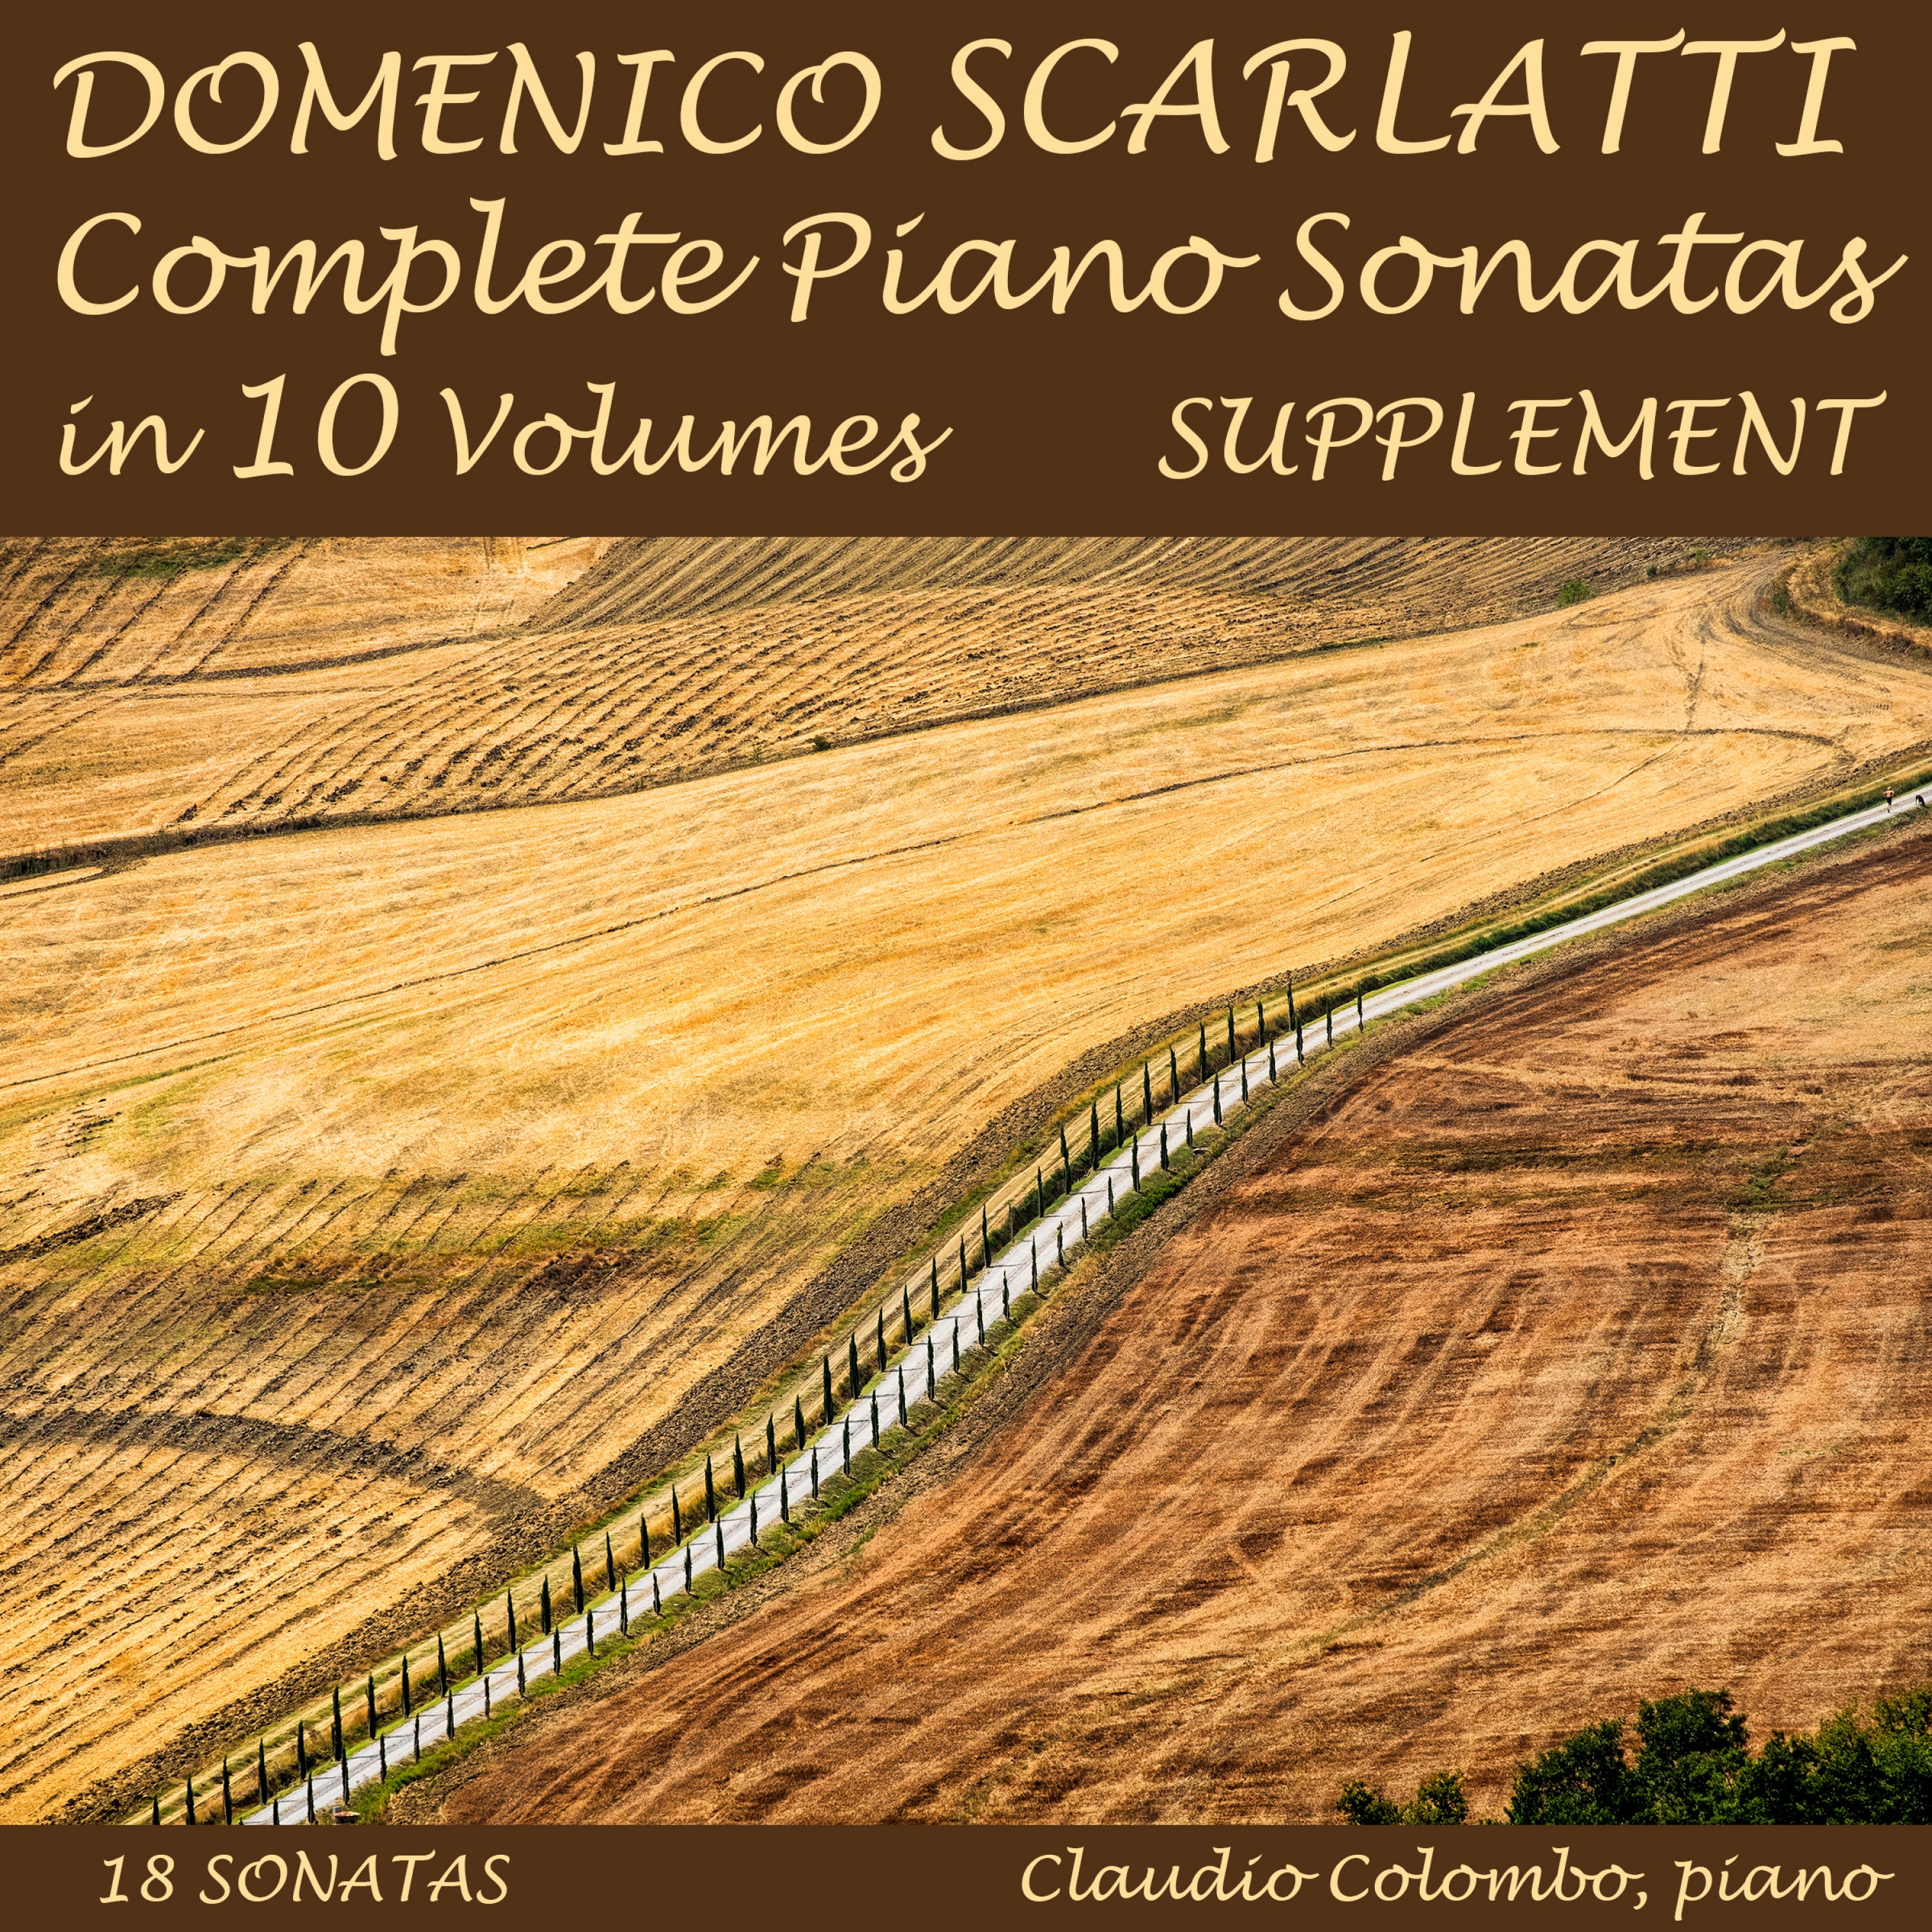 Domenico Scarlatti: Complete Piano Sonatas in 10 Volumes, Supplement